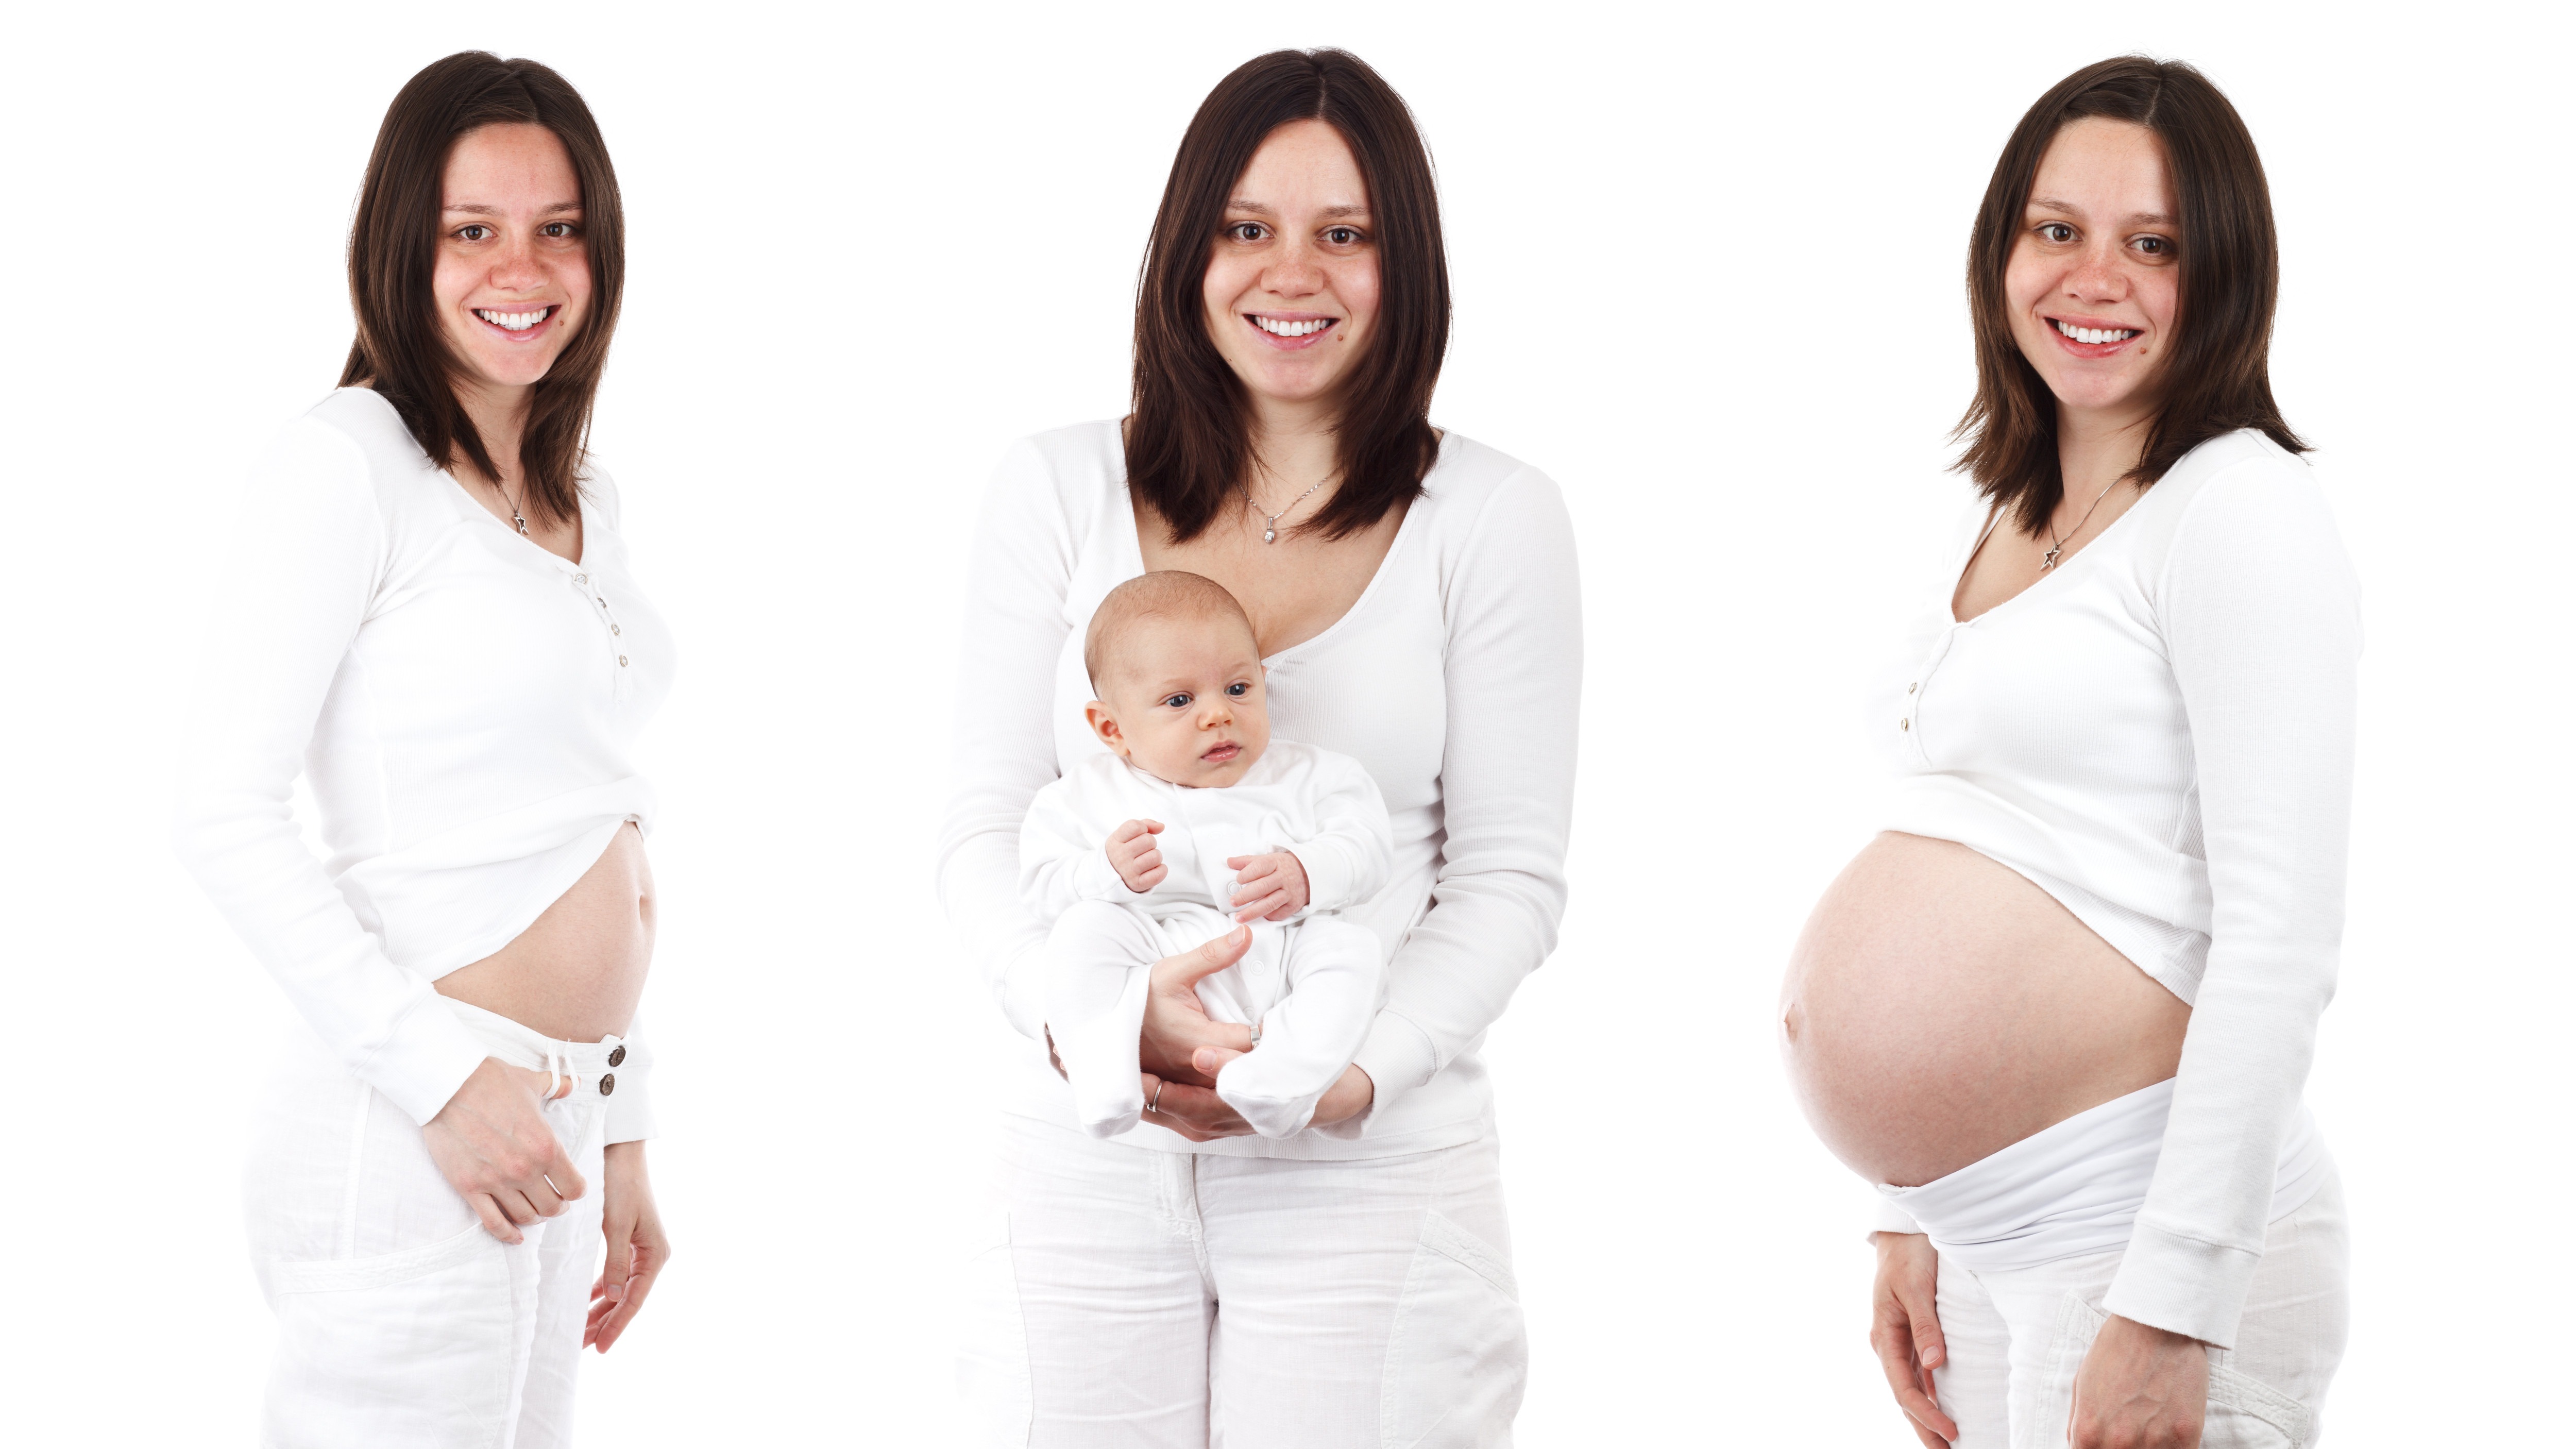 En la imagen podemos ver 3 fases del embarazo. A la izquierda tenemos a una mujer embarazada de unas 15-20 semanas. En la derecha la misma mujer en la semana 34. Finalmente en la parte central tenemos a la mujer sosteniendo a su bebé.